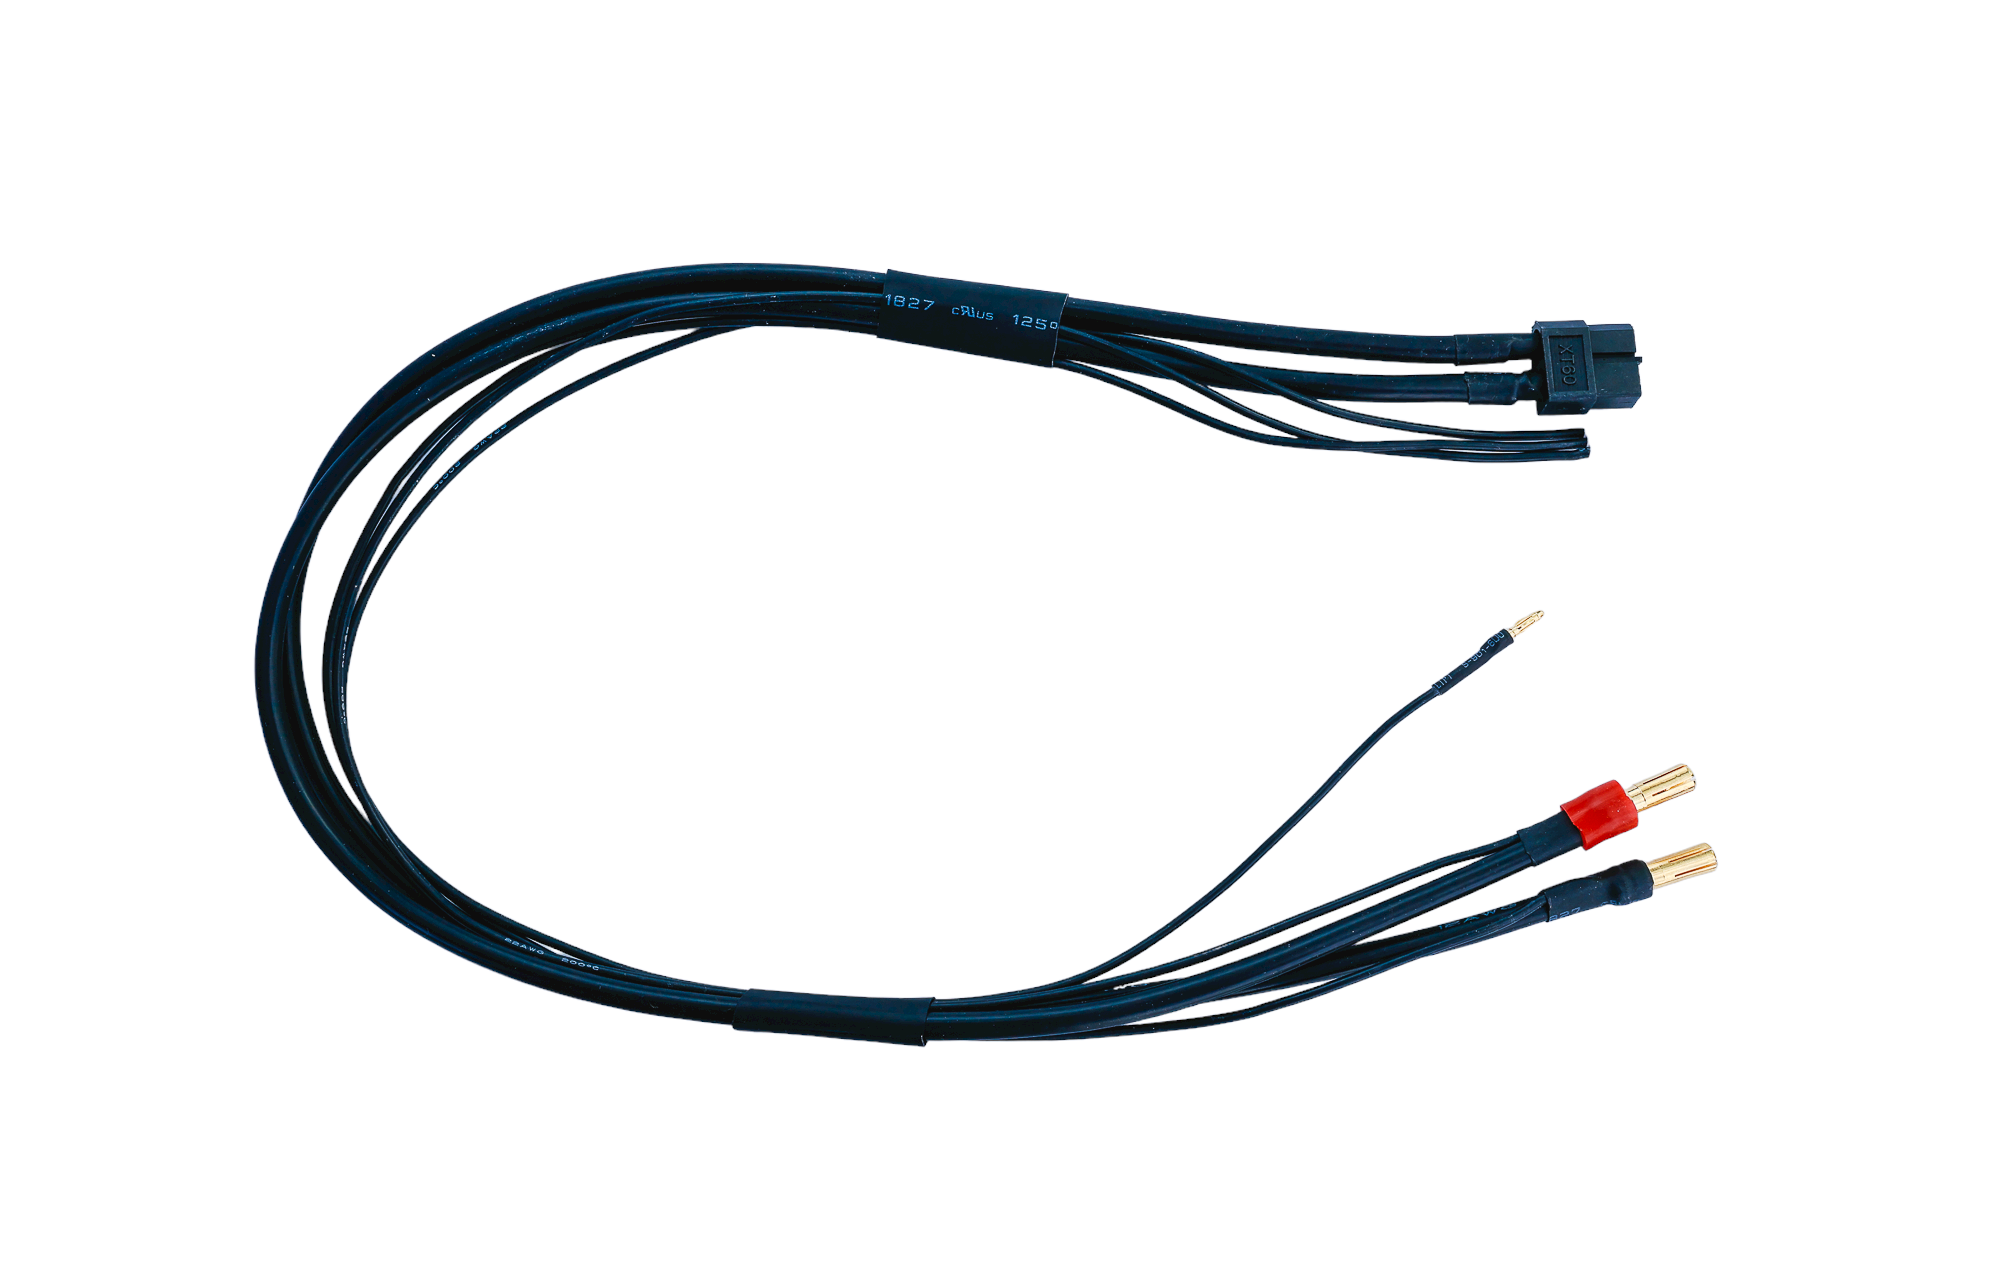 Corsatec chargeur cable pk 4mm